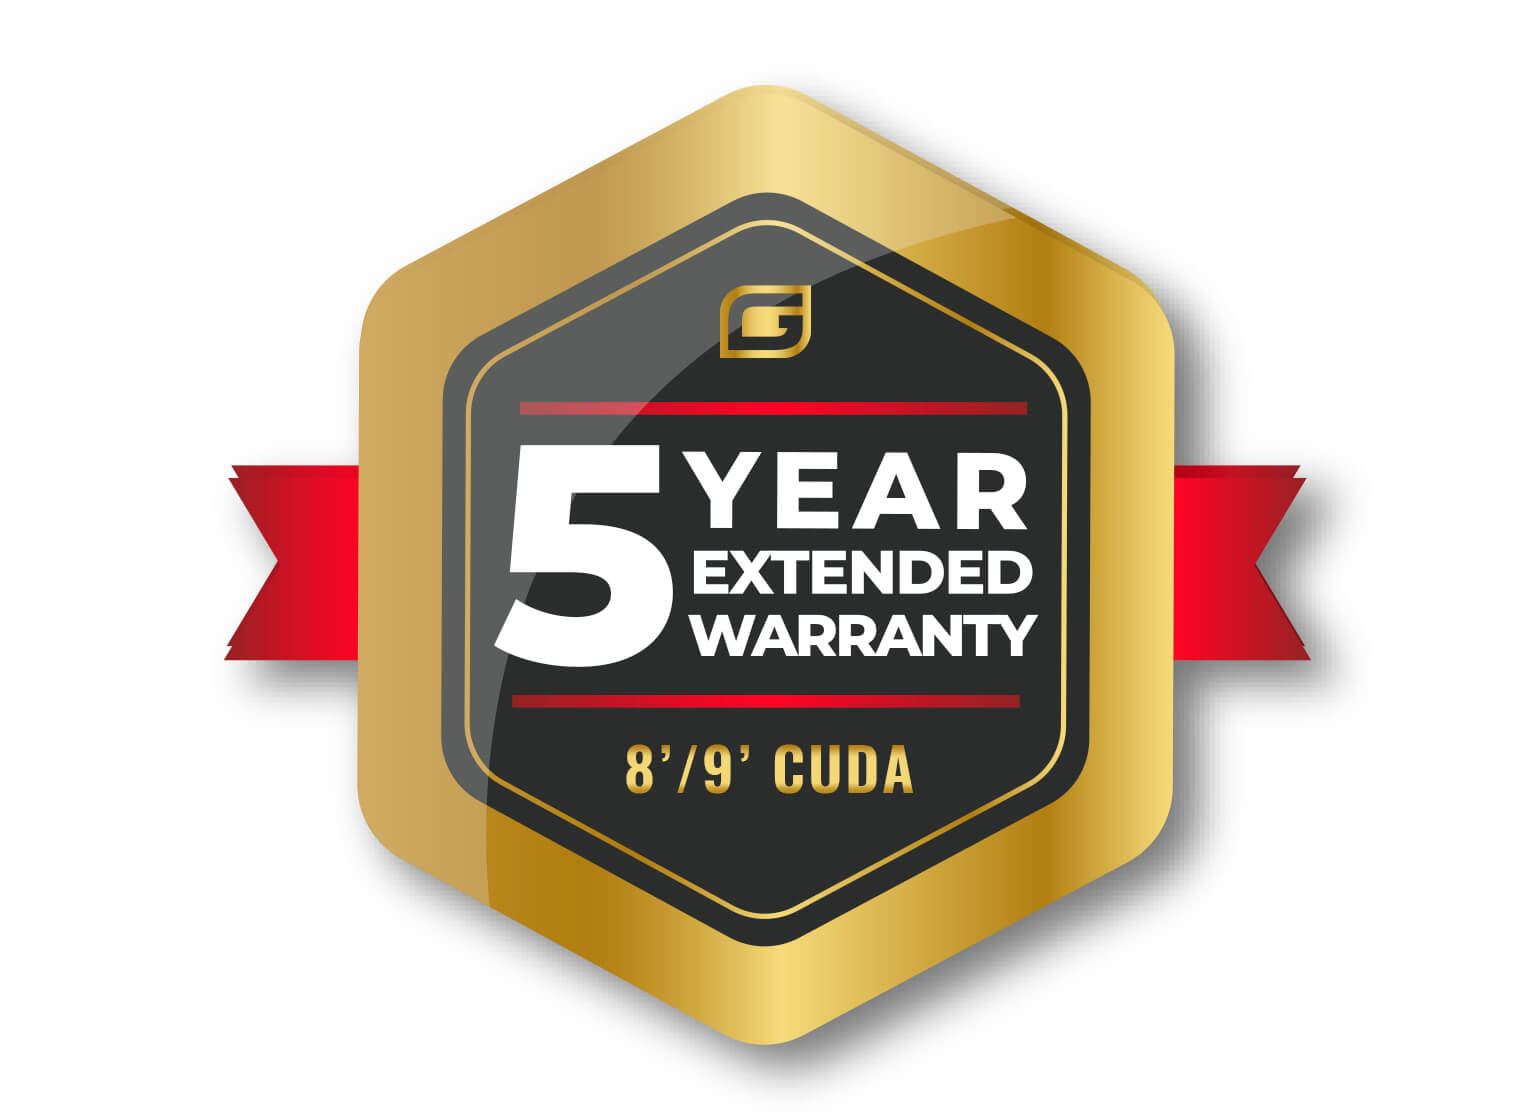 8'/9' CUDA 5 Year Extended Warranty